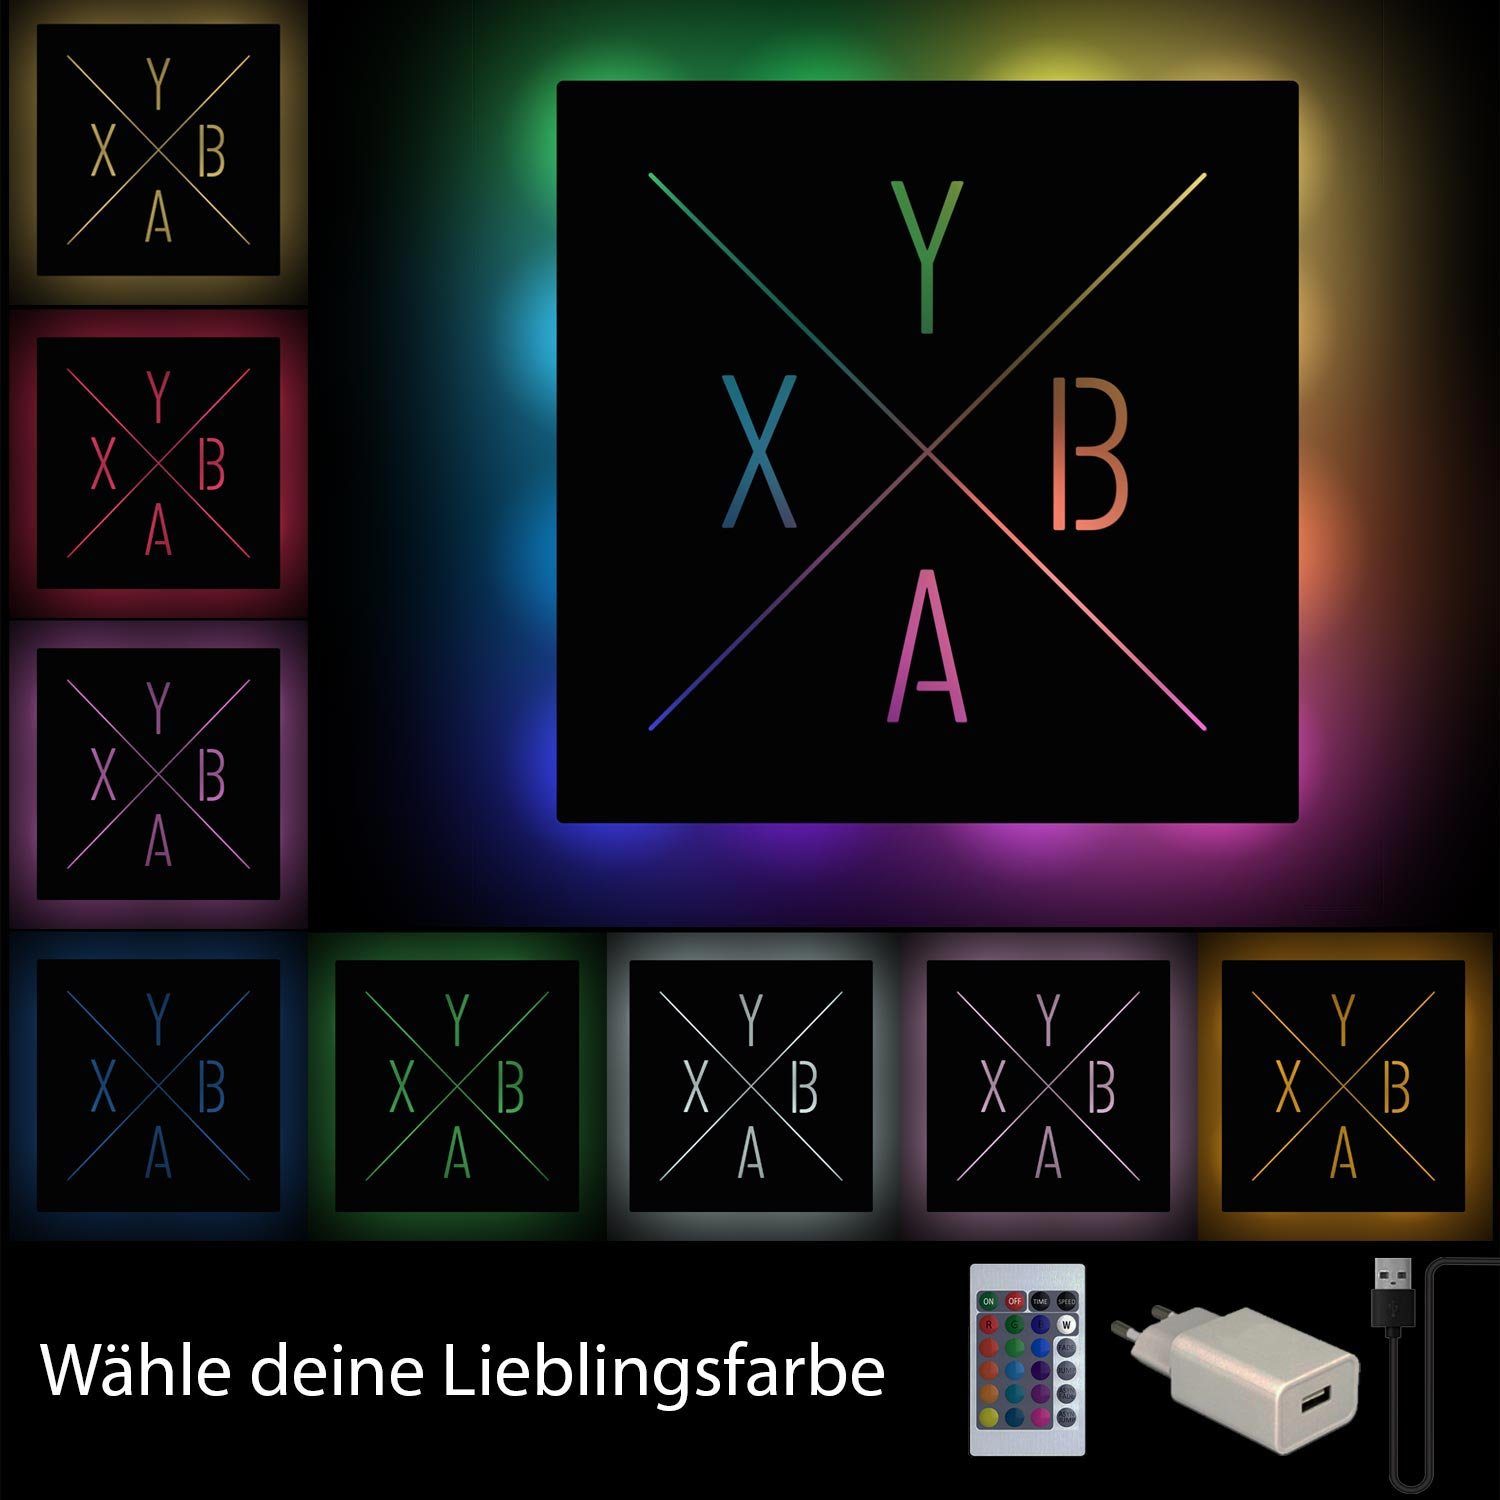 Schwarz Controller RGB YBAX Deko LED Leuchte mit Namofactur integriert, Gamepad fest Wanddeko, XABY Wandlampe LED Fernbedienung Dekolicht Gamer Licht USB Zocker, Lampe Tasten Gamer Farbwechsel,